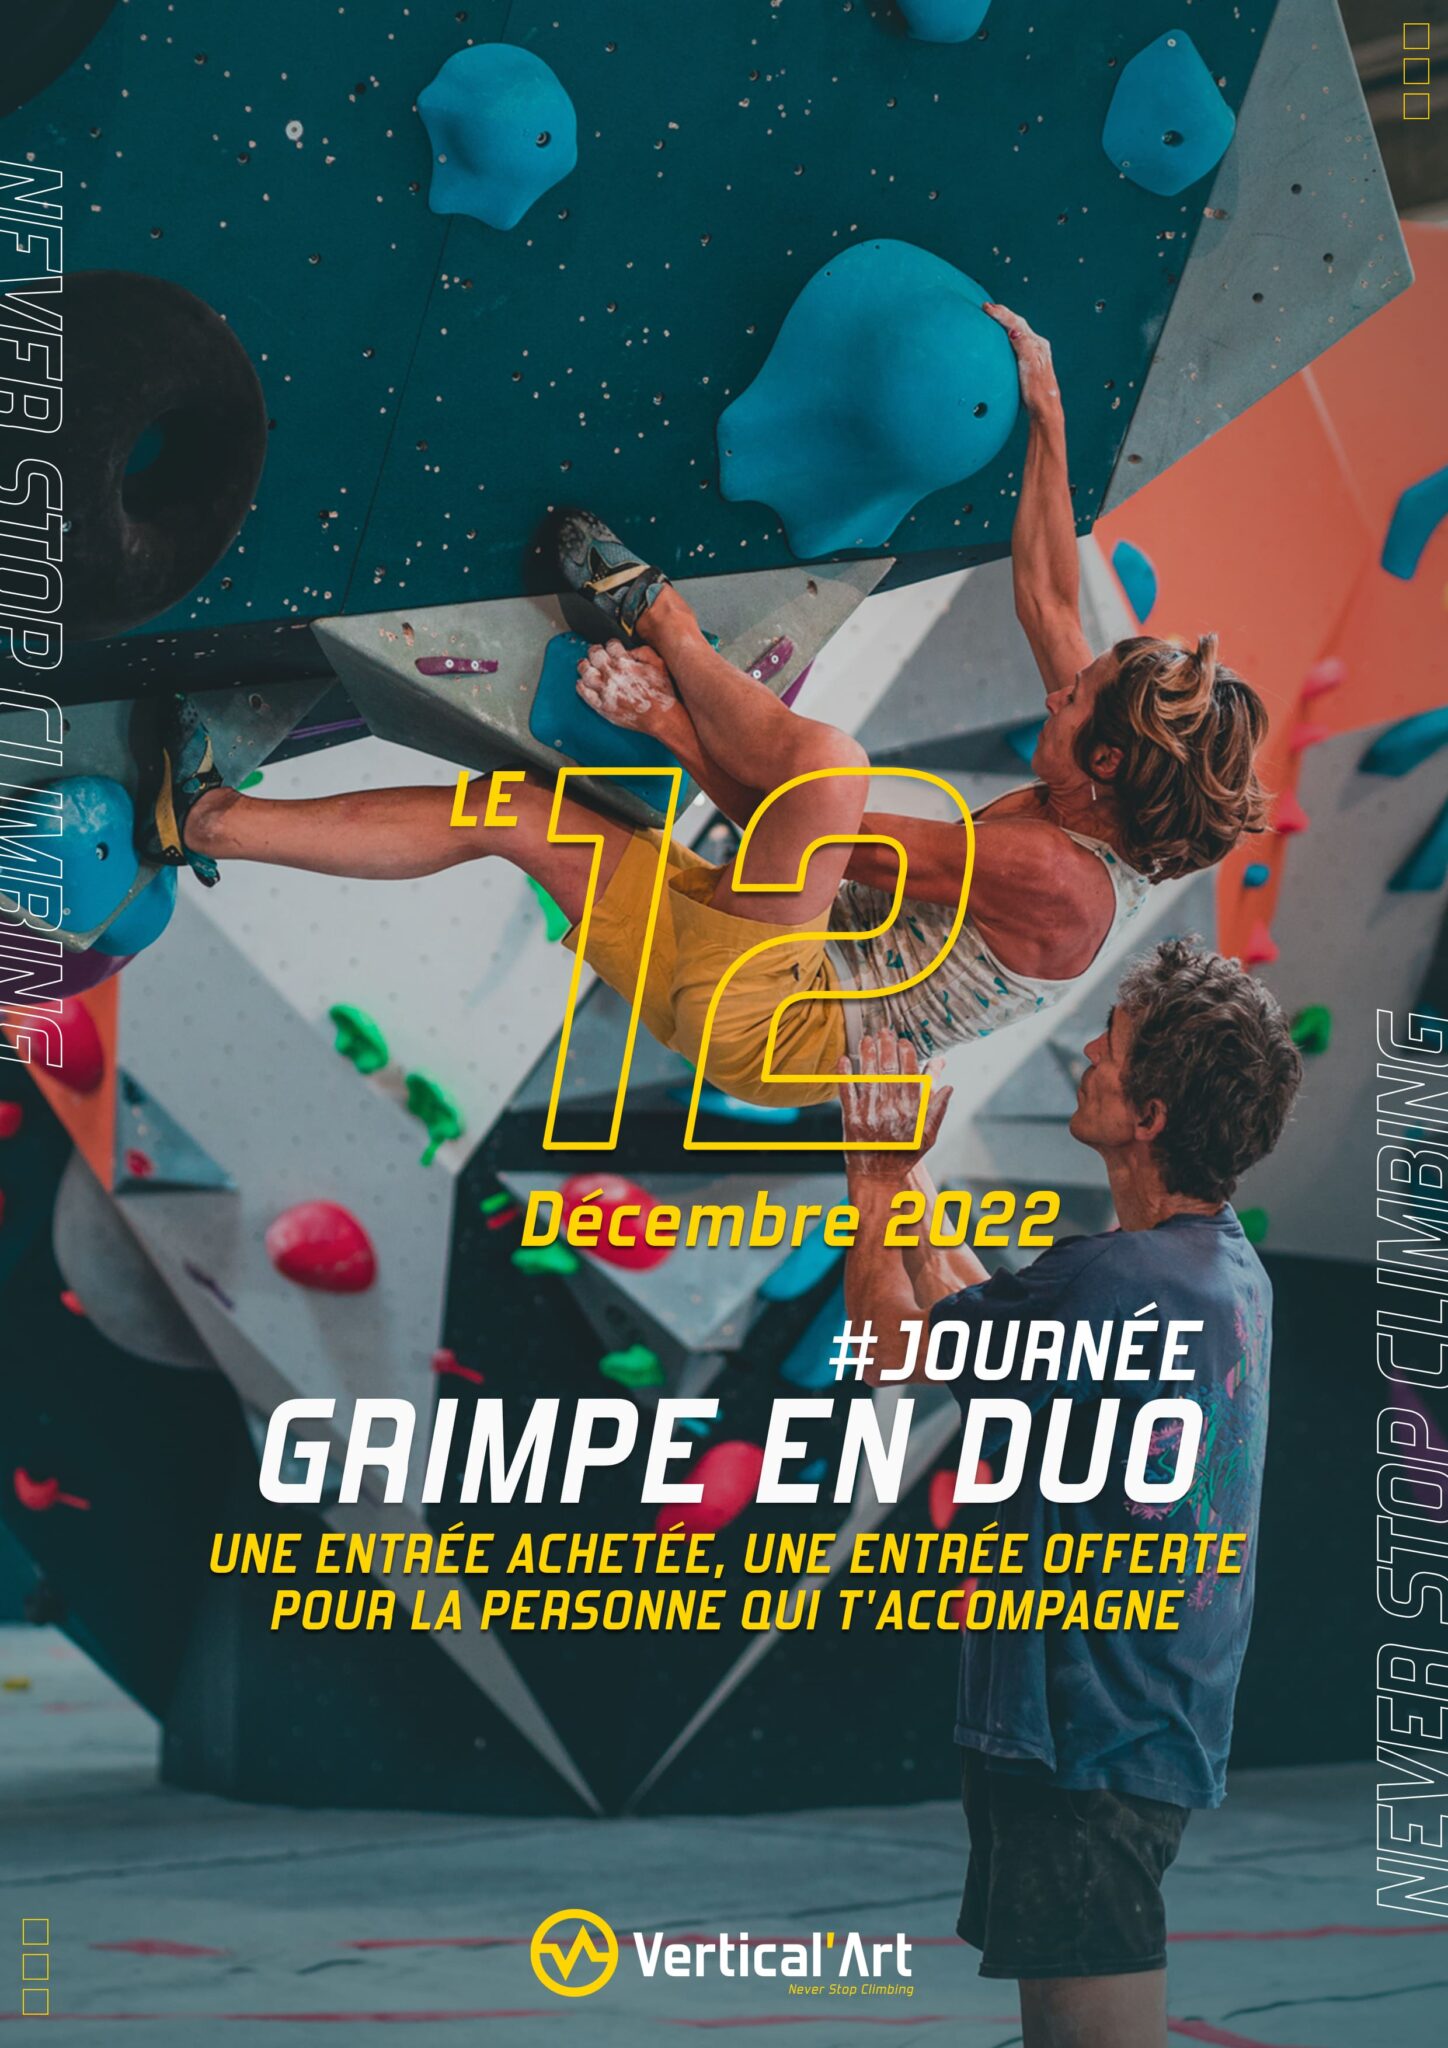 Grimpe en duo Vertical'Art Le Mans 12 décembre 2022 une entrée achetée, une offerte